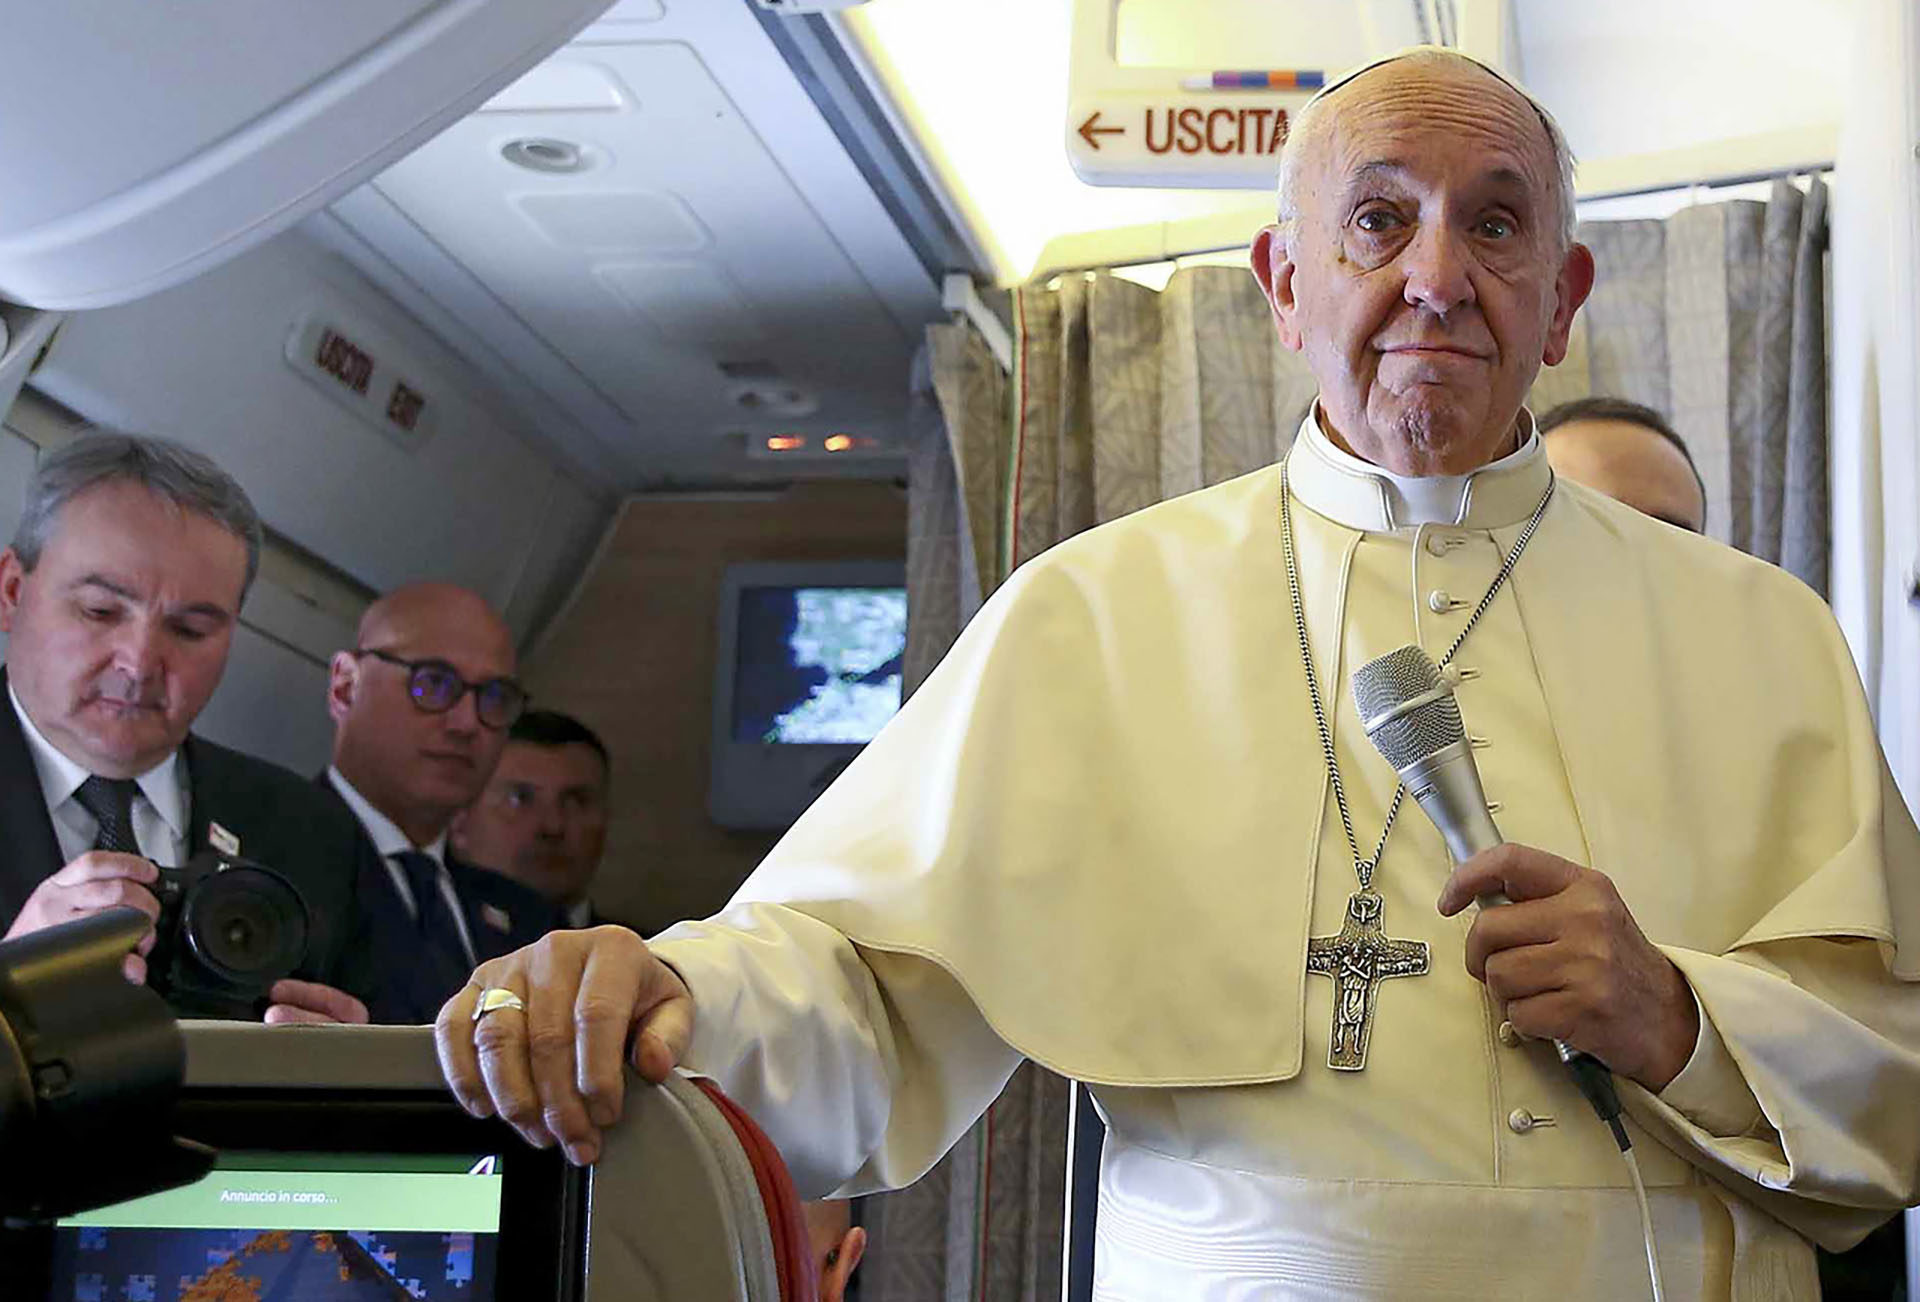 Un pape a regretté les propos tenus devant la presse au Chili. Ce n’est pas courant. | © A. Bianchi/ AP/Keystone